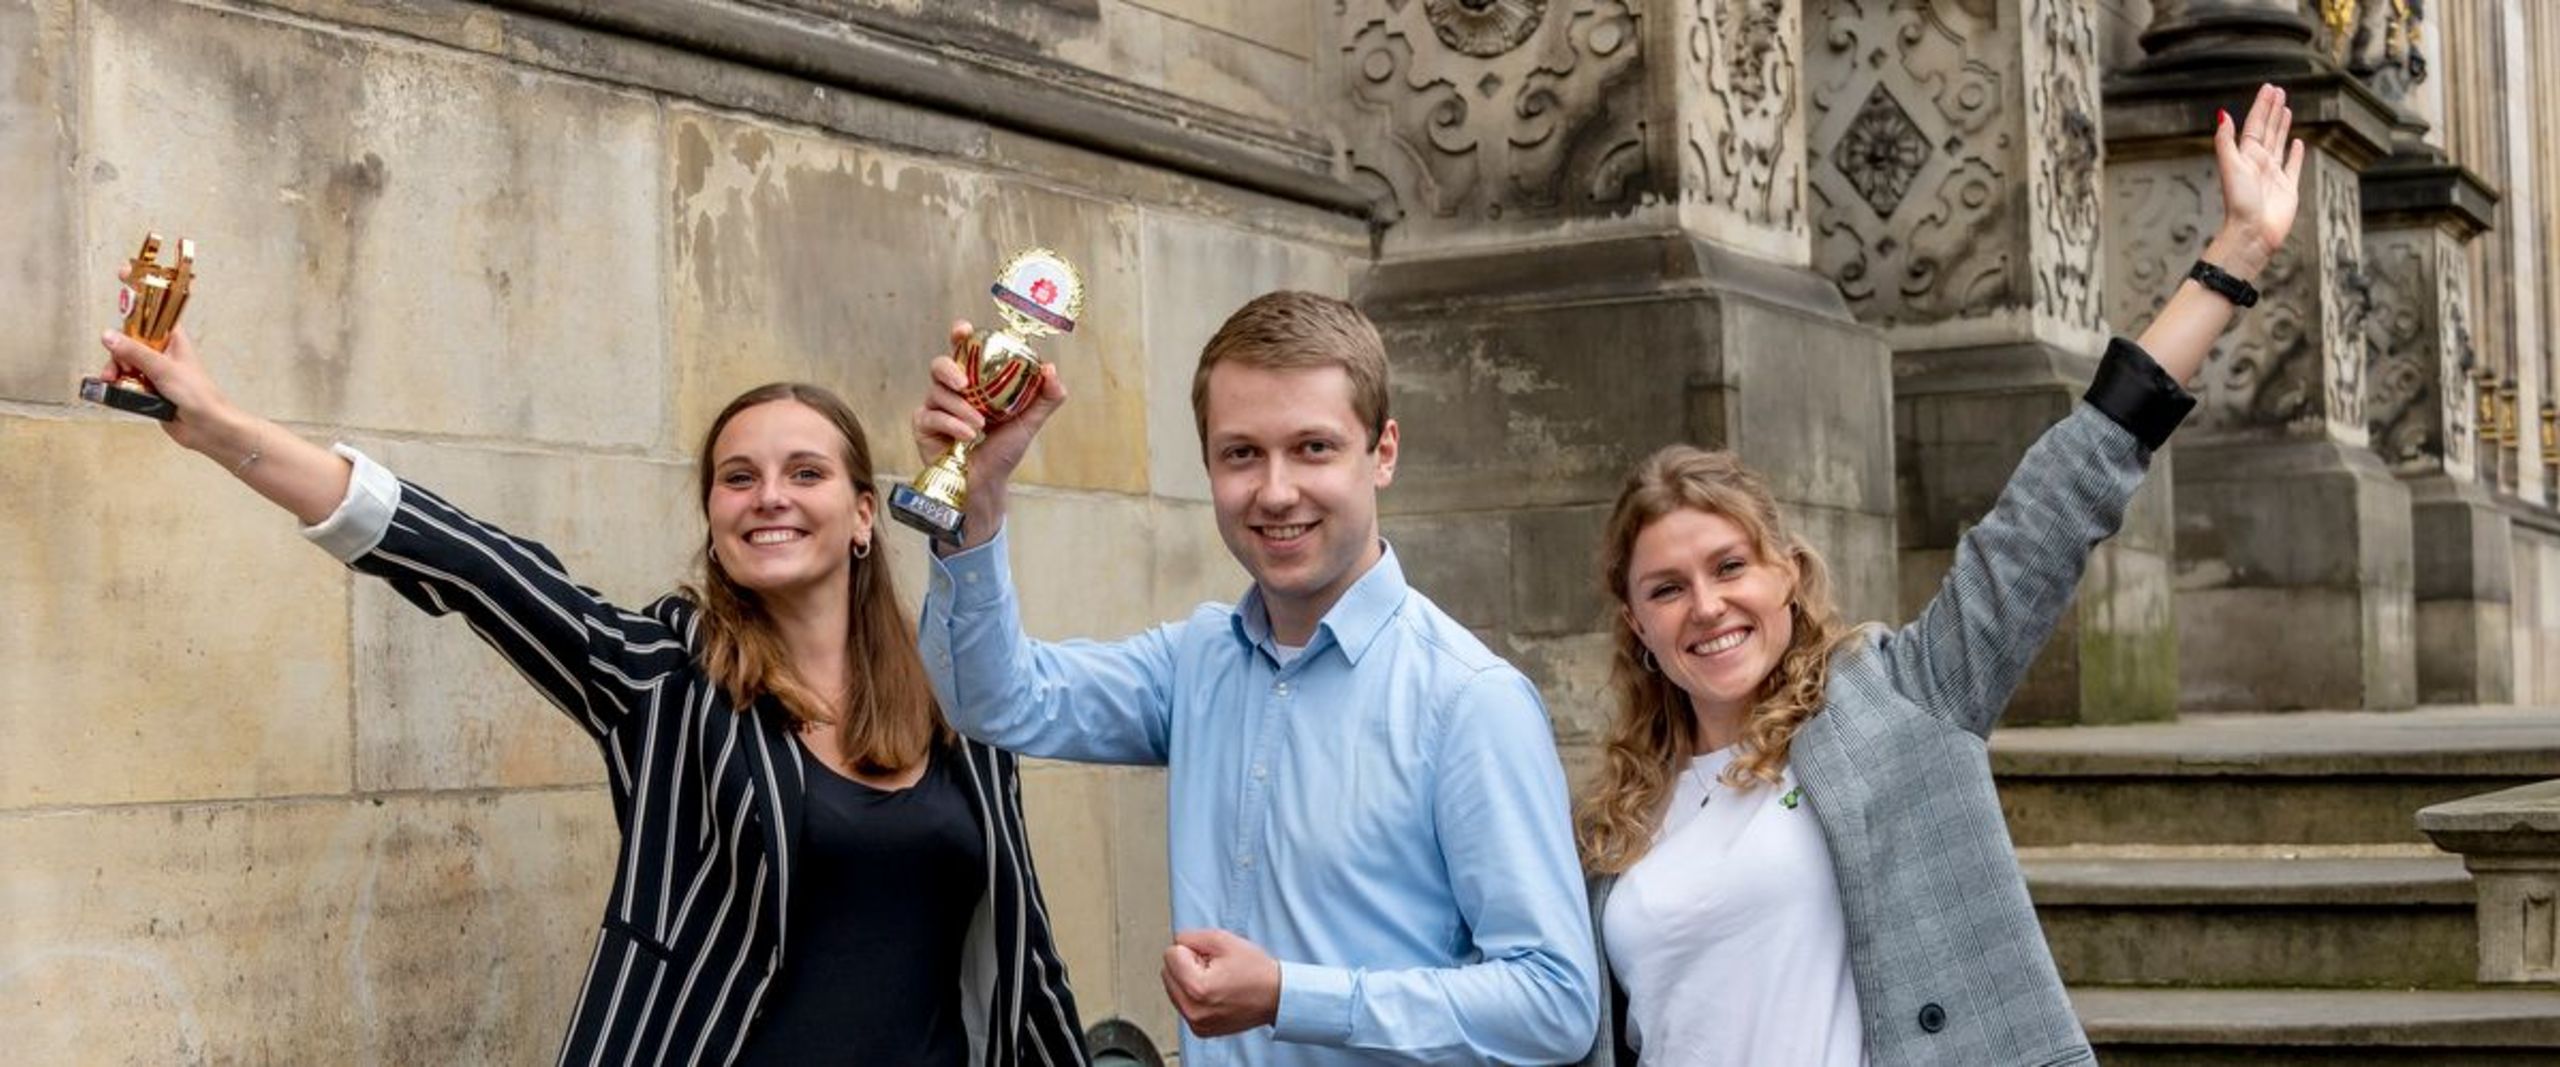 3 junge Gründer:innen jubelnd mit Pokal vor Schütting